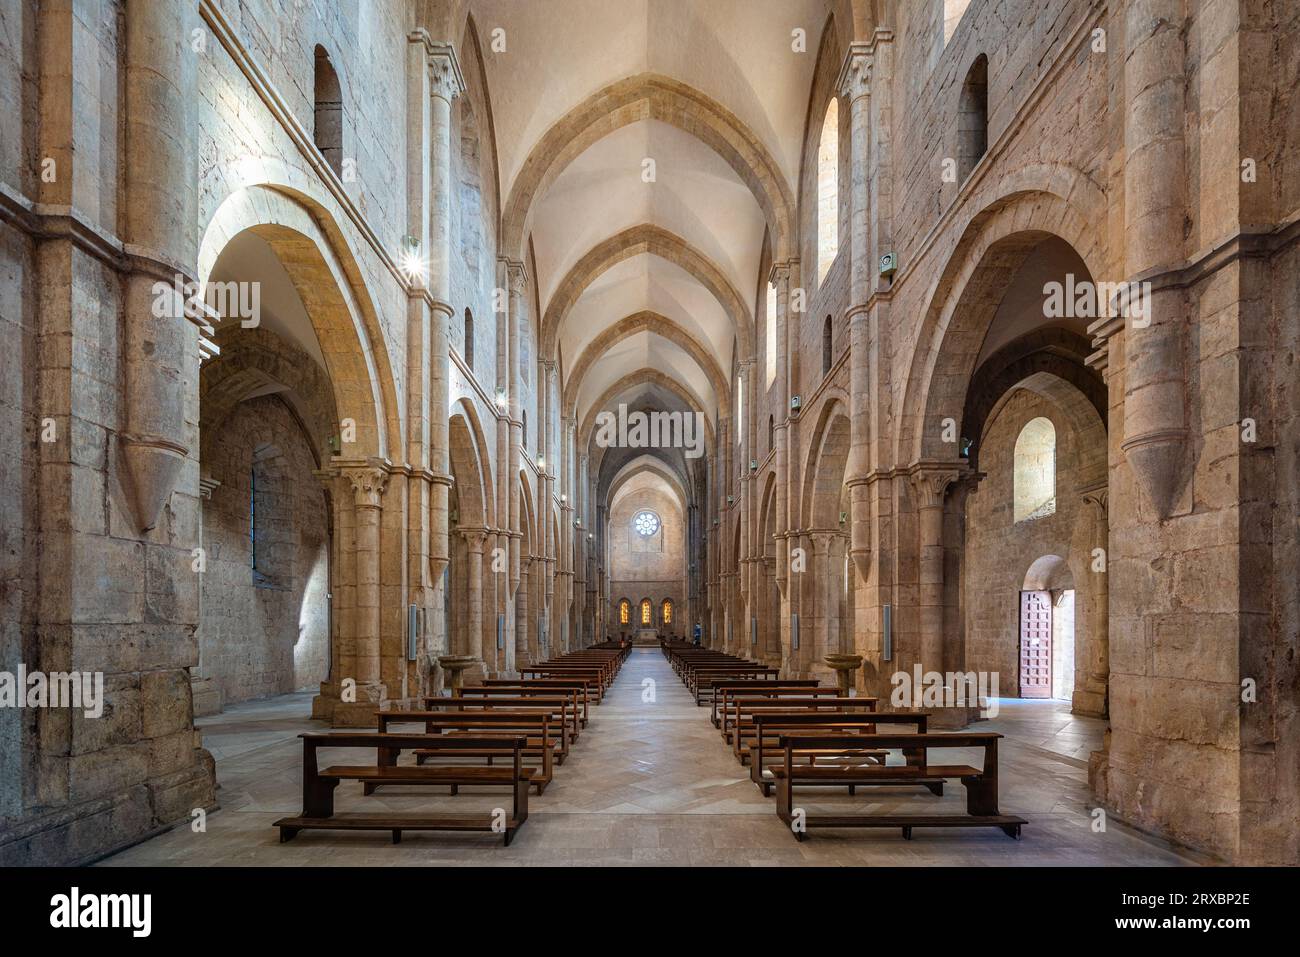 Vue intérieure de la merveilleuse abbaye de Fossanova près de la ville de Priverno, dans la province de Latina, Latium, italie. Banque D'Images